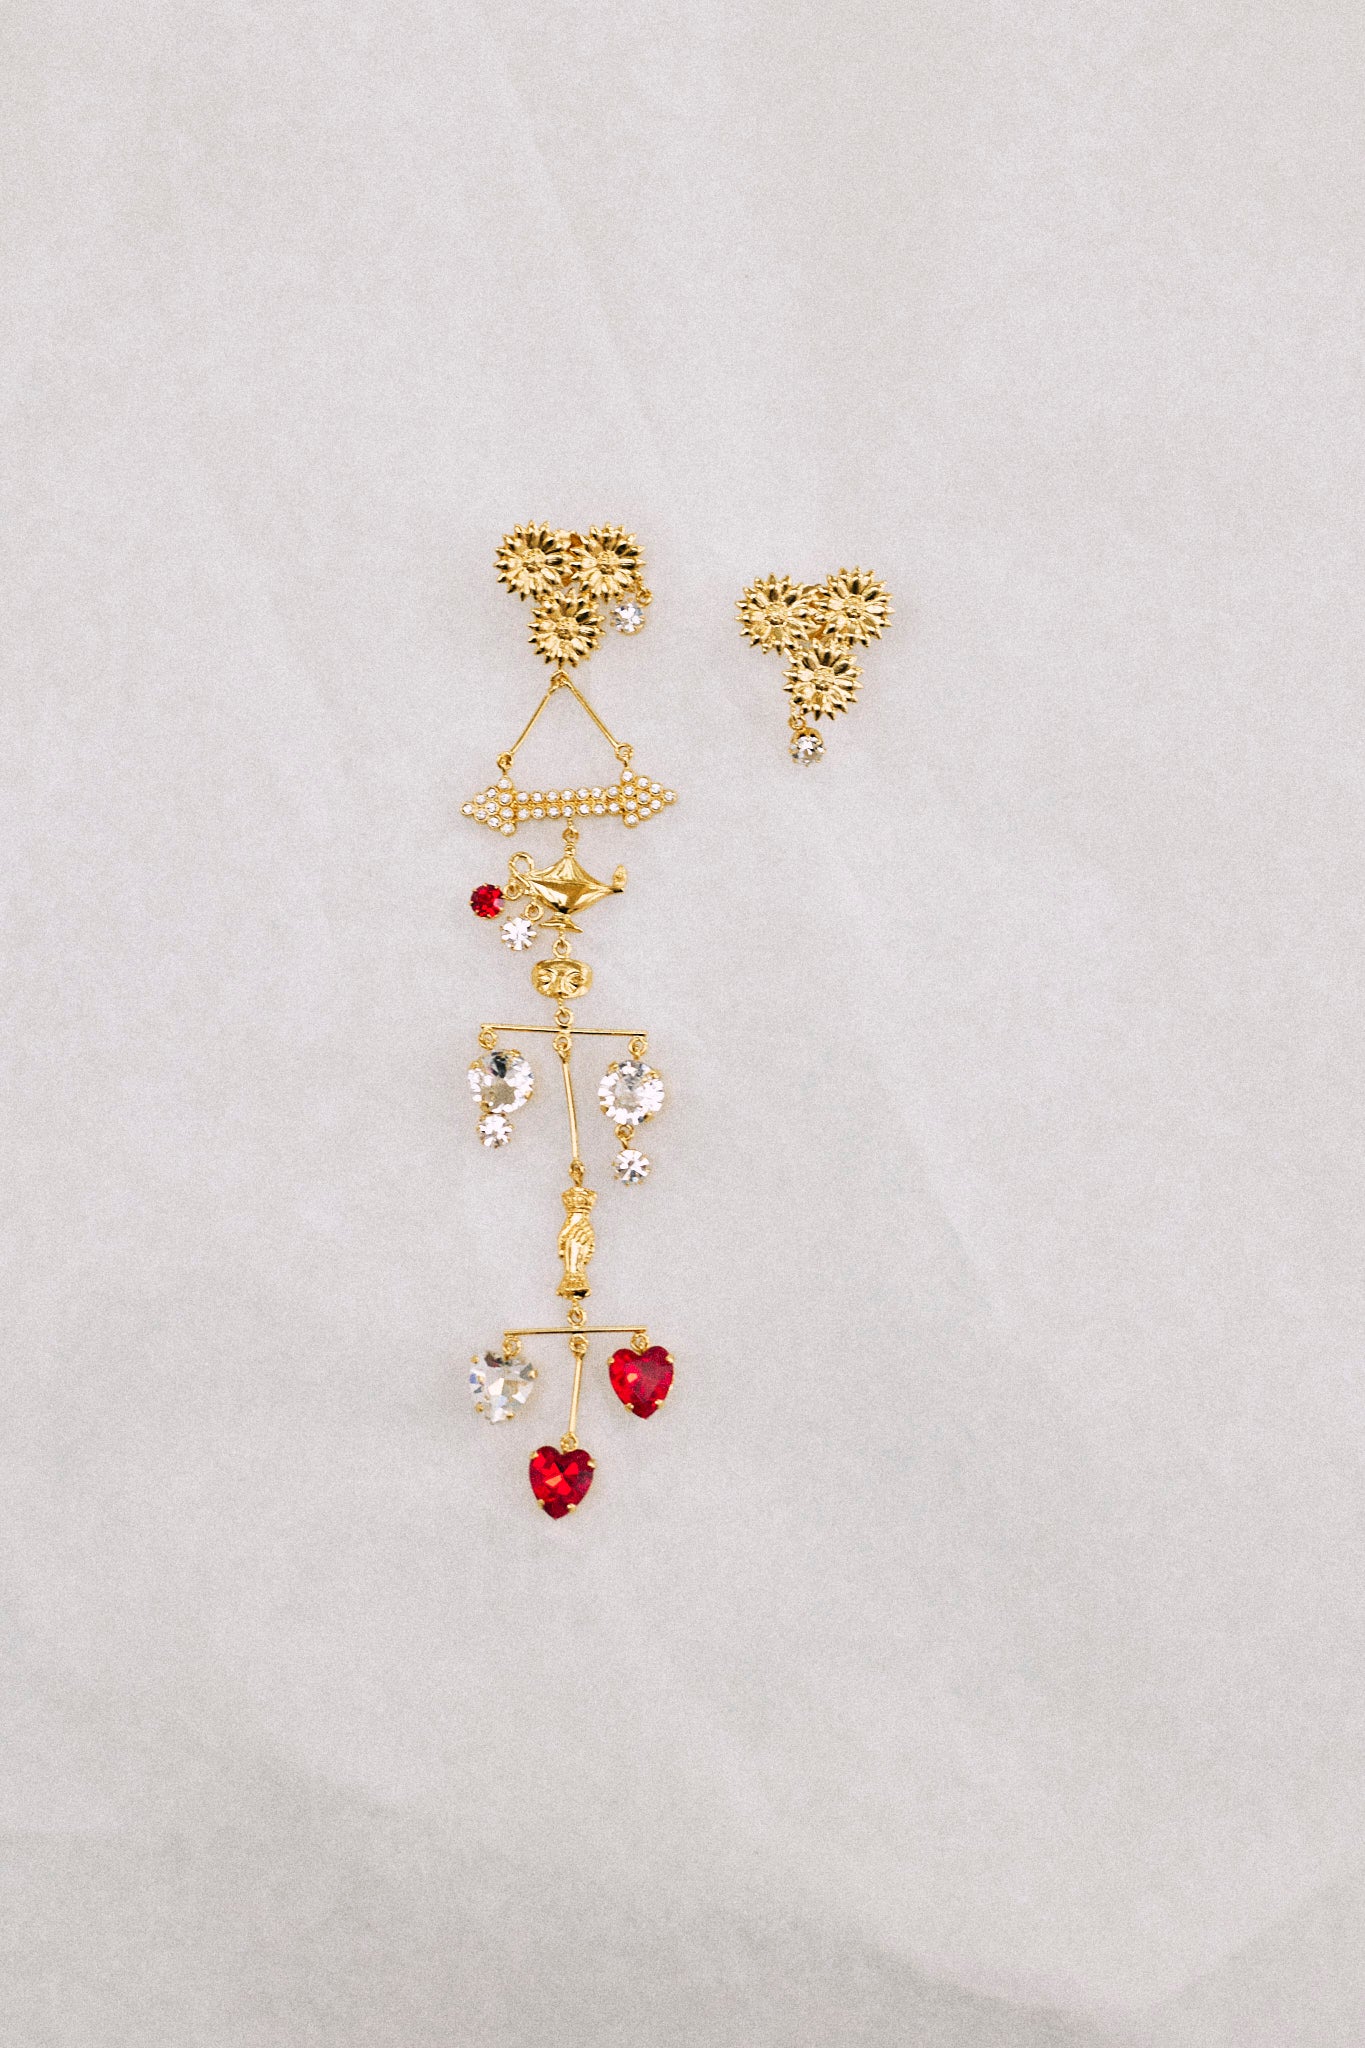 Cupid earrings